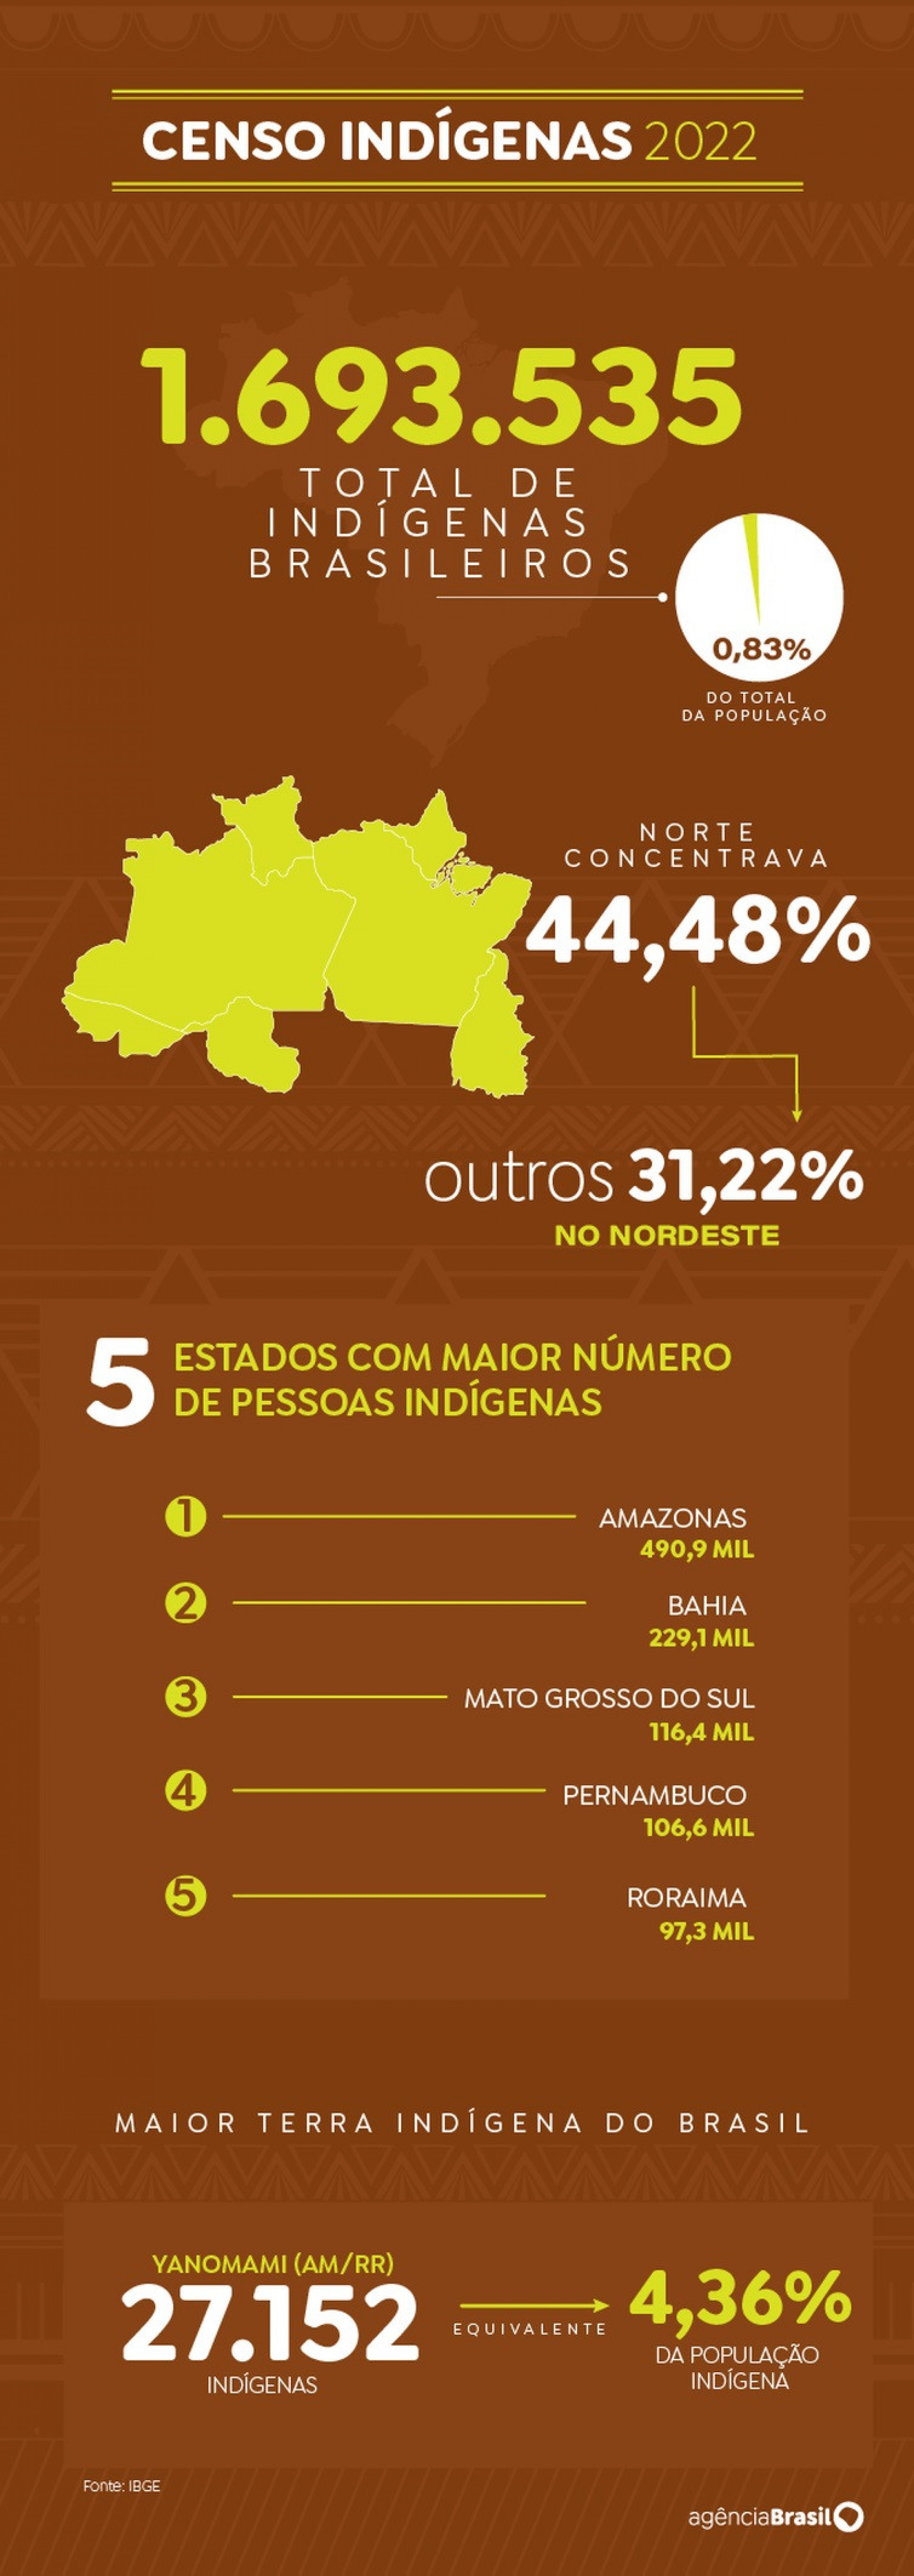 Amazonas concentra grande número de pessoas indígenas - Arte/Agência Brasil